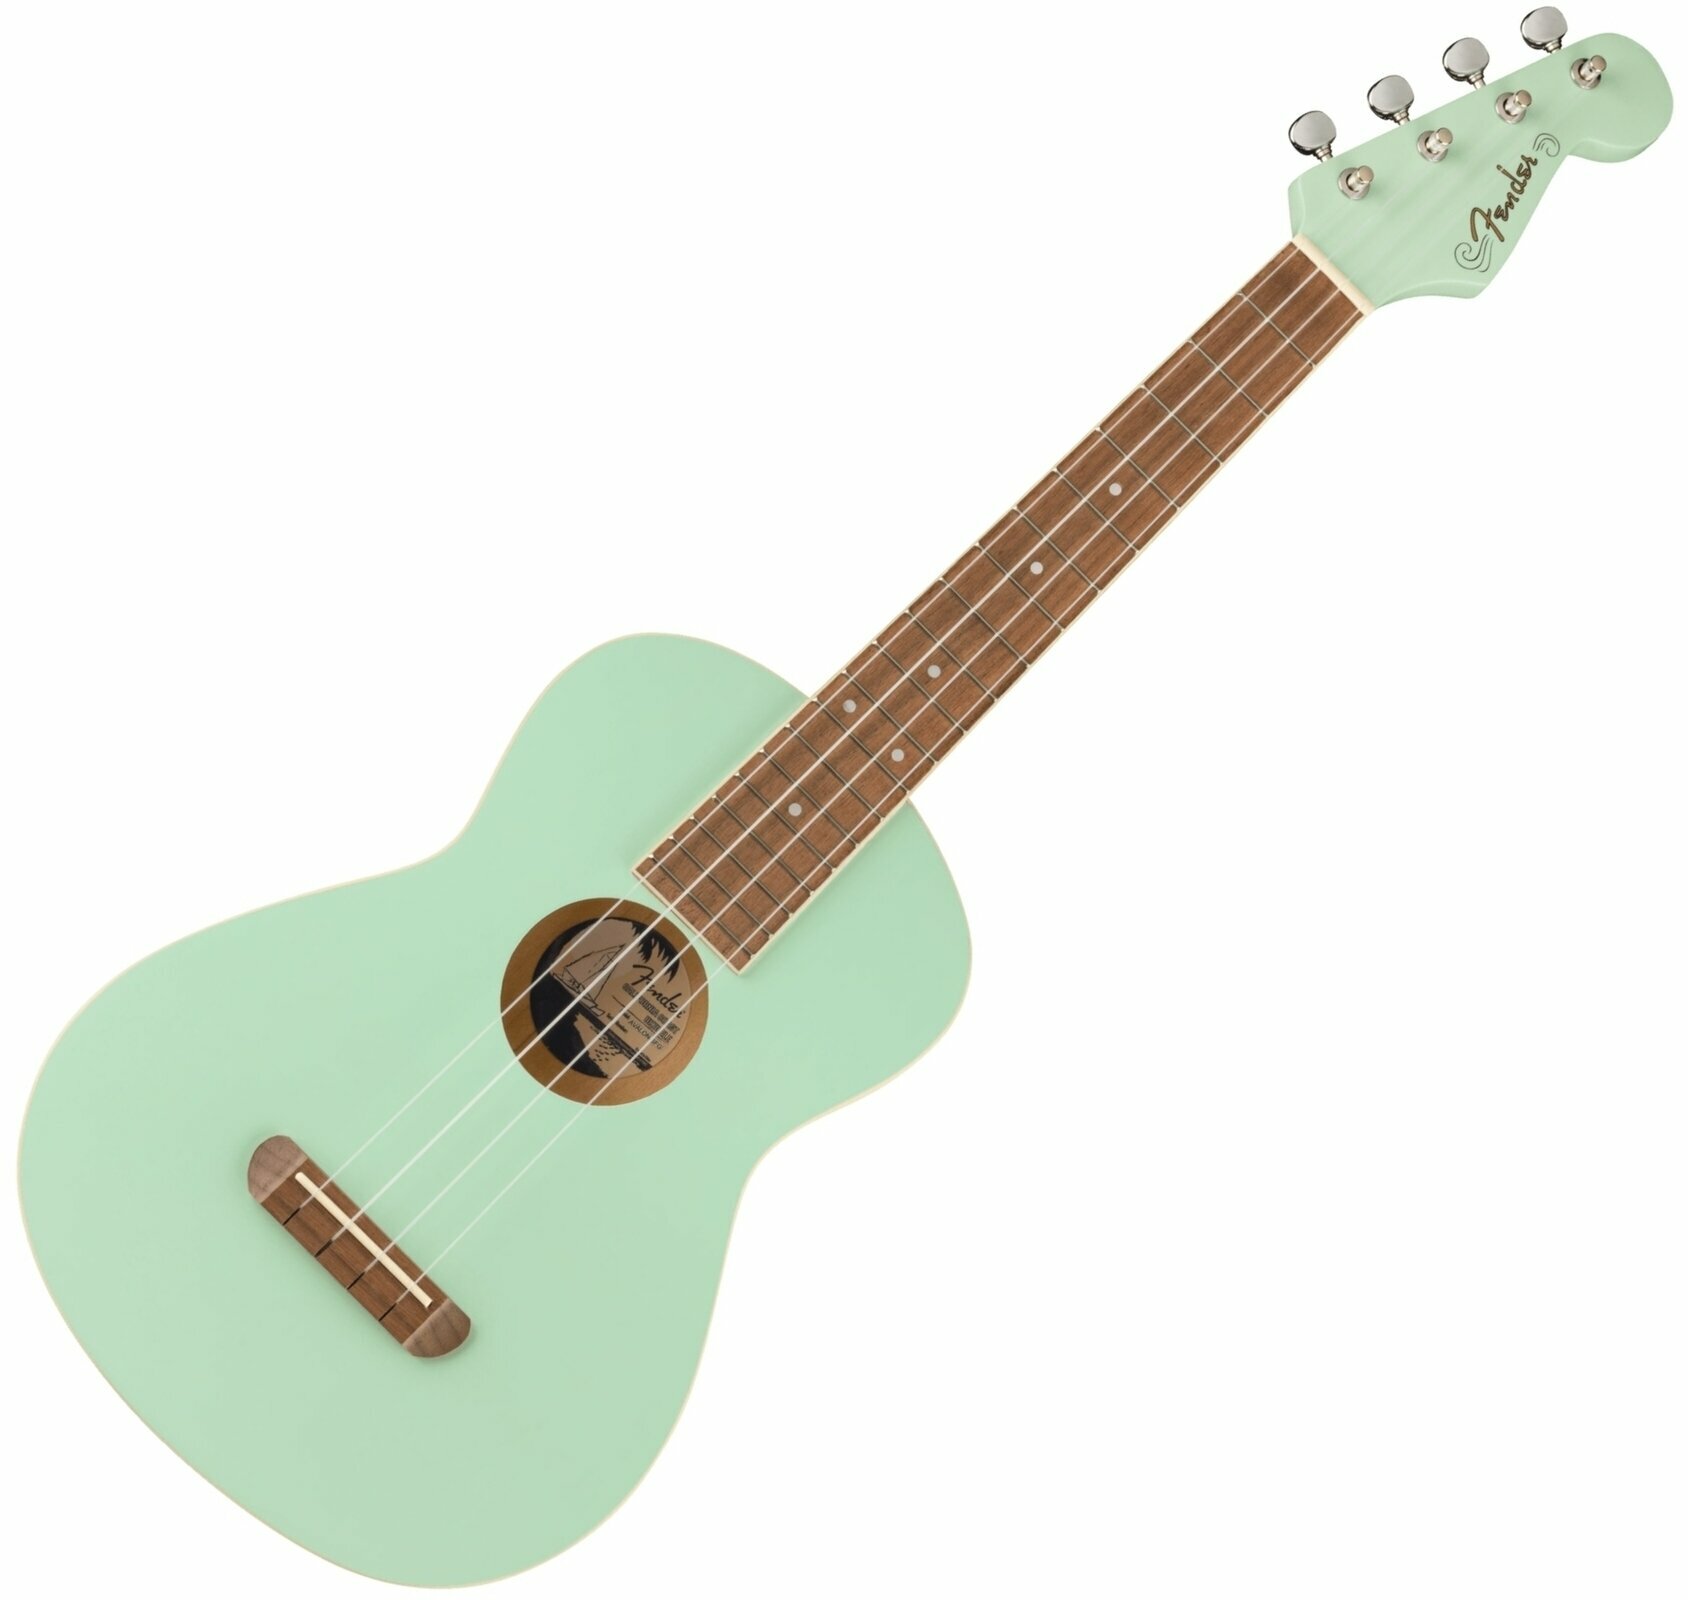 Tenori-ukulele Fender Avalon Tenor Ukulele WN Tenori-ukulele Surf Green